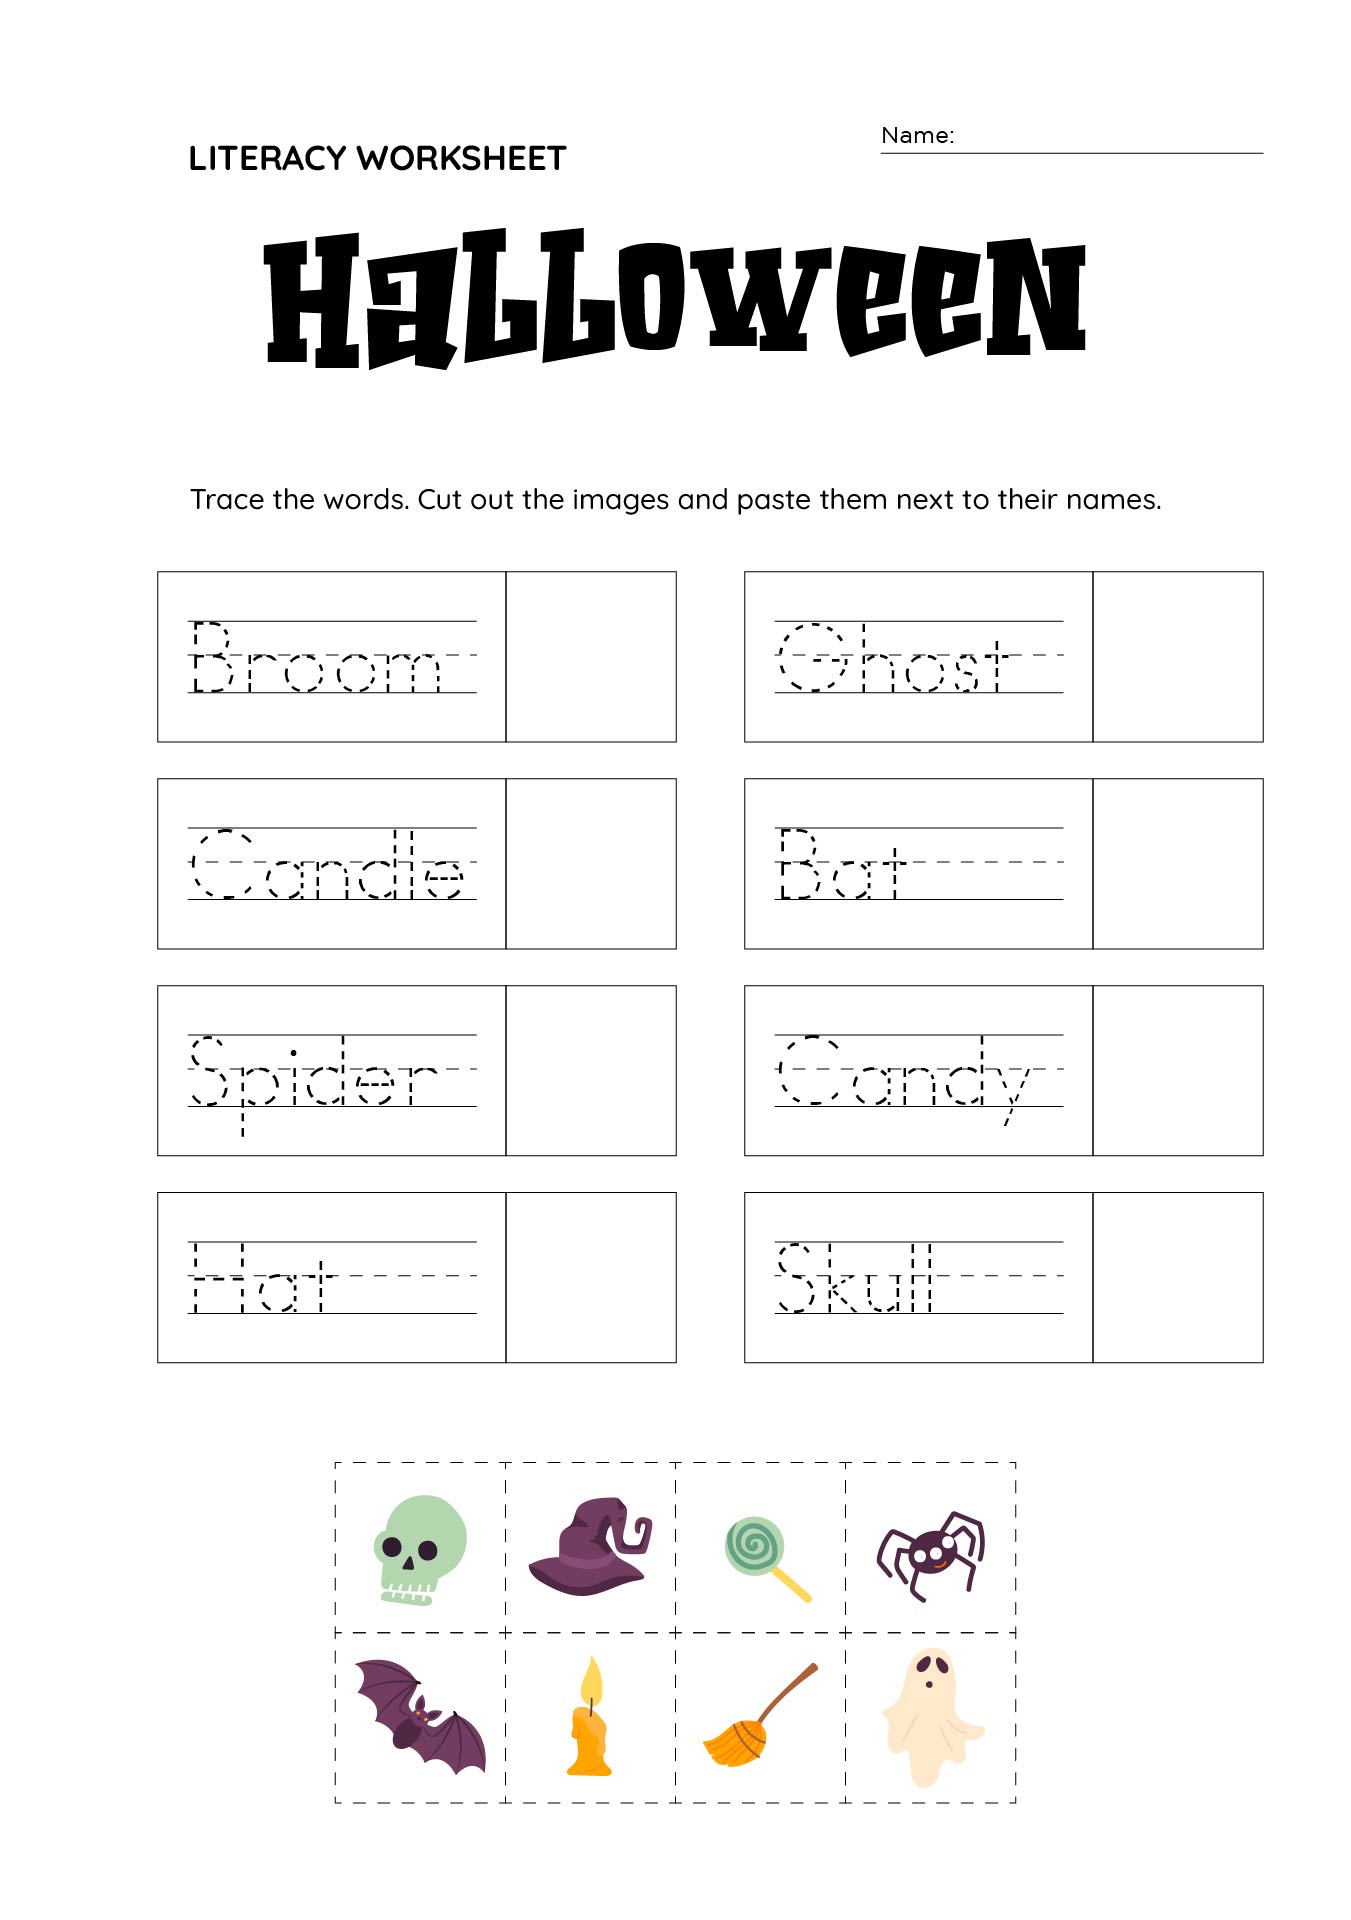 Printable Halloween Literacy Worksheet For Preschoolers